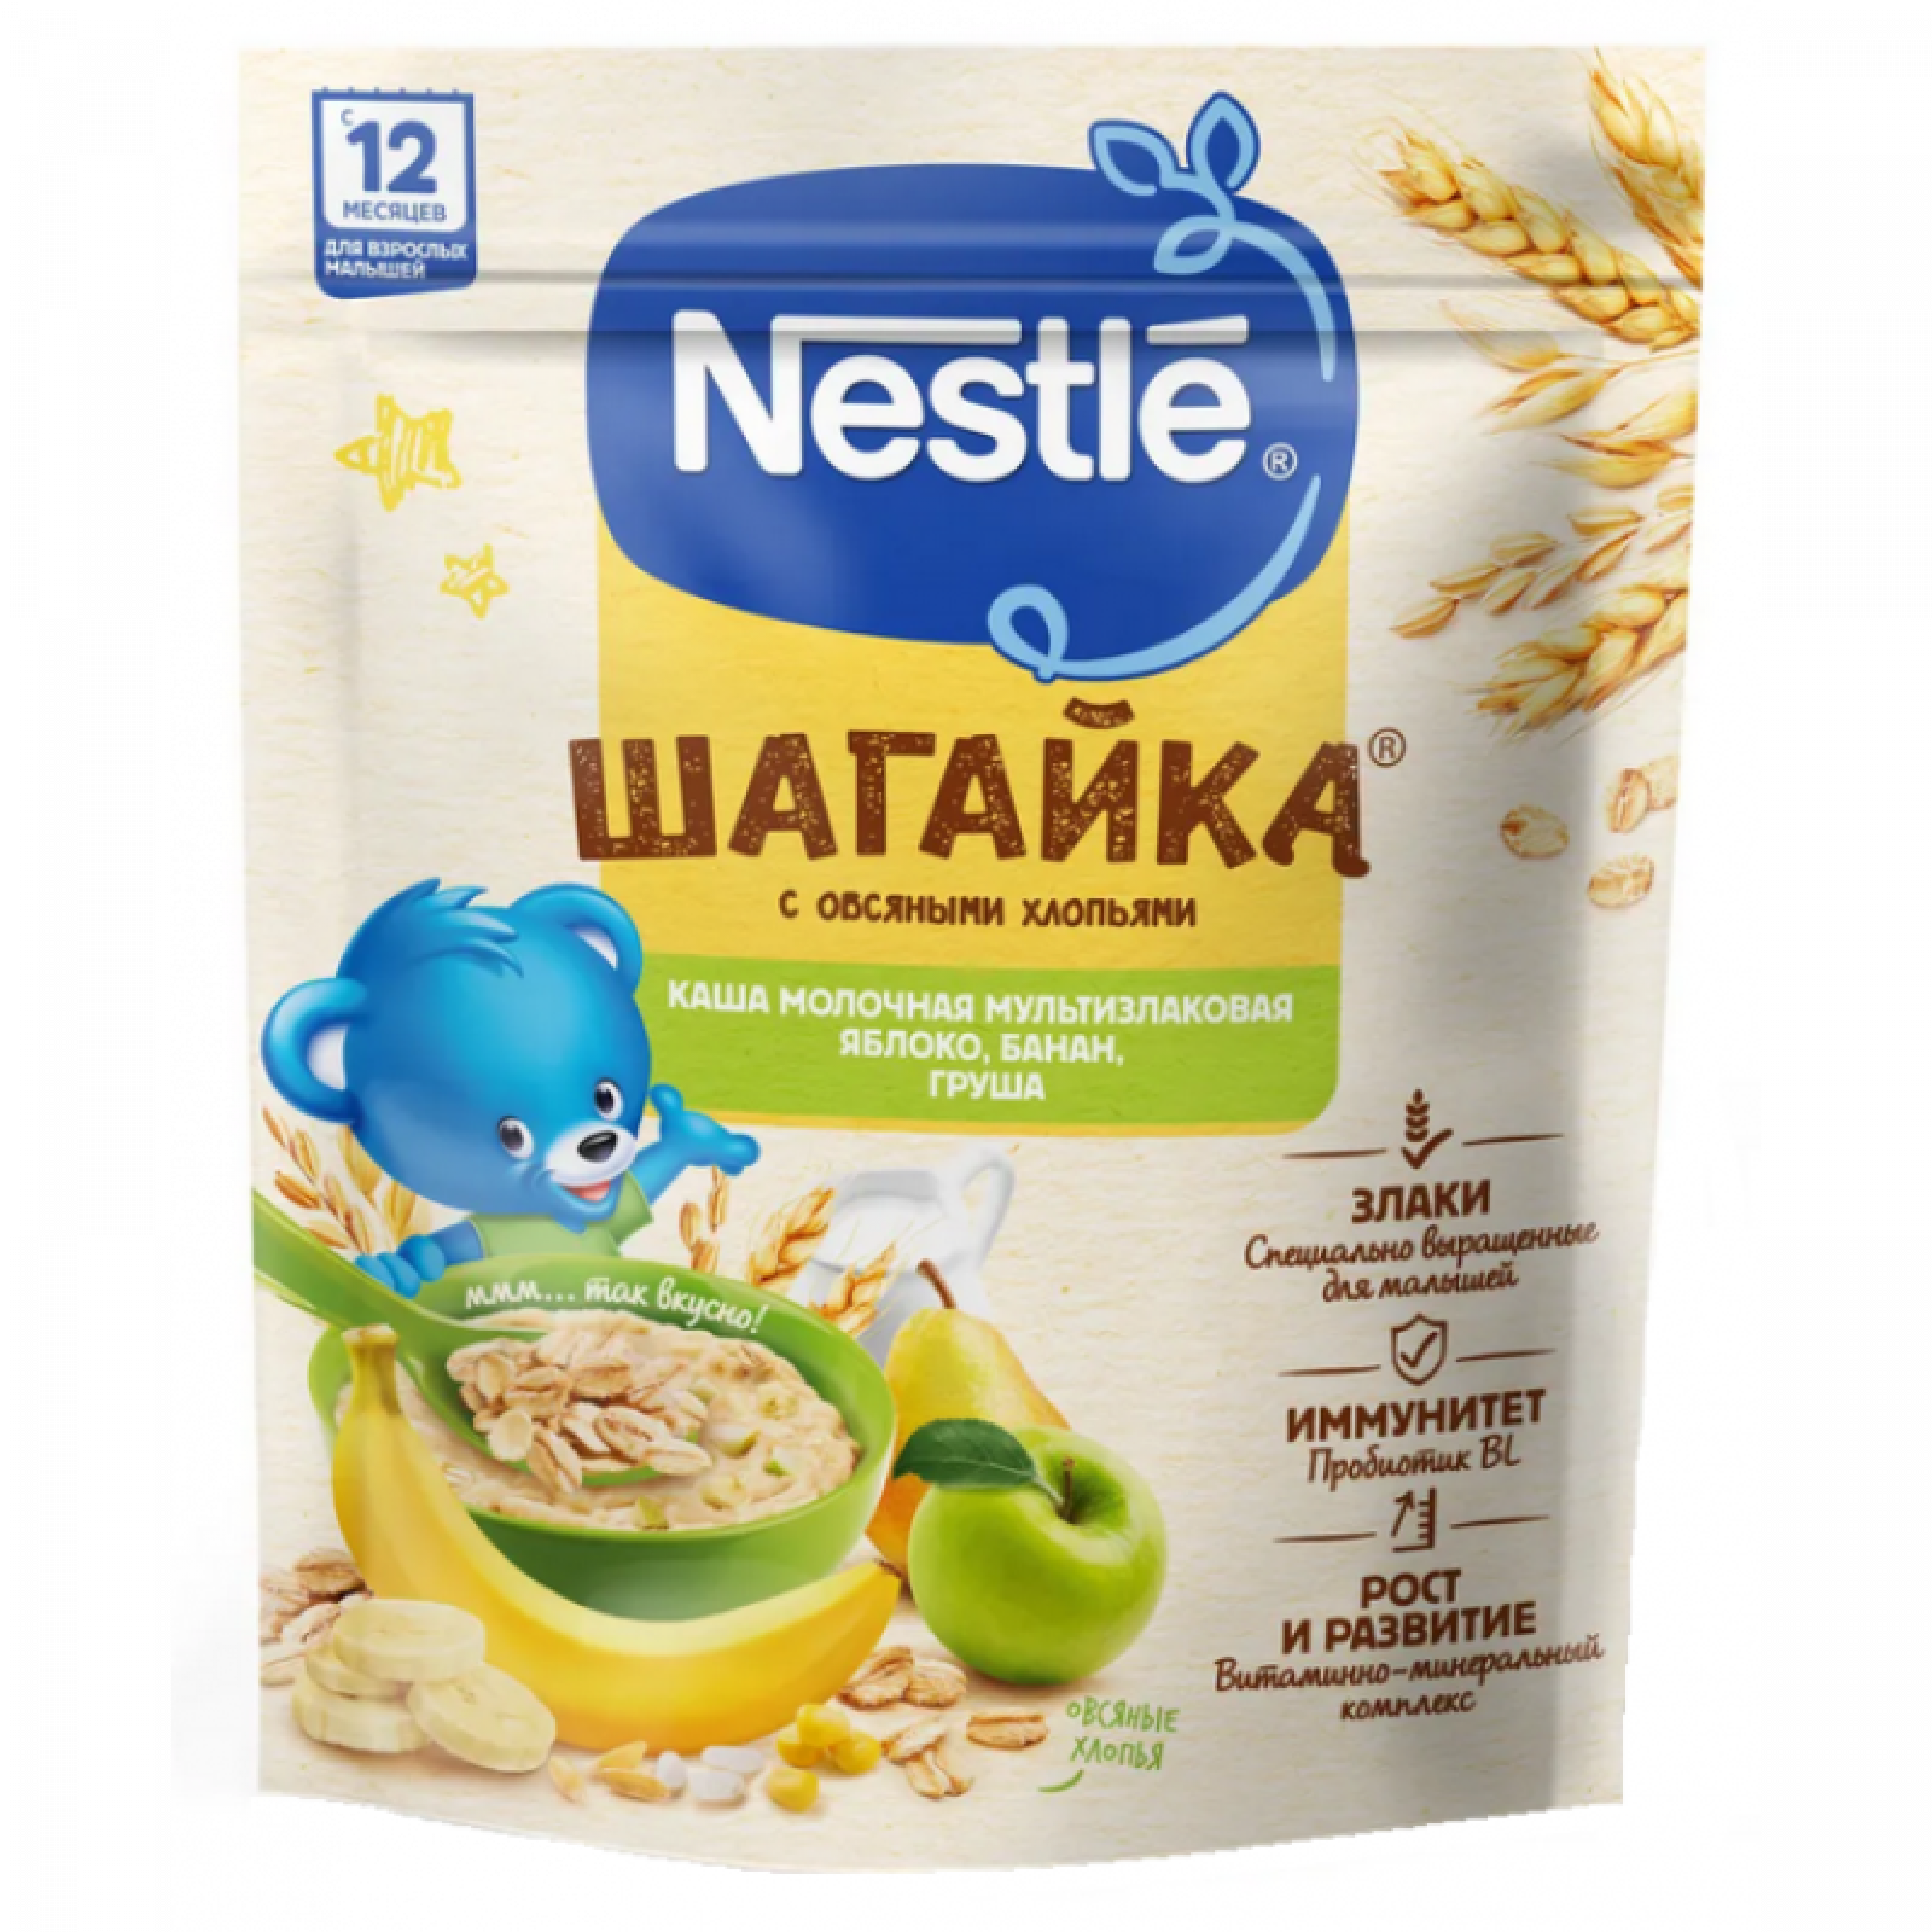 Сухая молочная каша 5 злаков Nestle Шагайка Яблоко, банан, груша с 12 месяцев 190 г